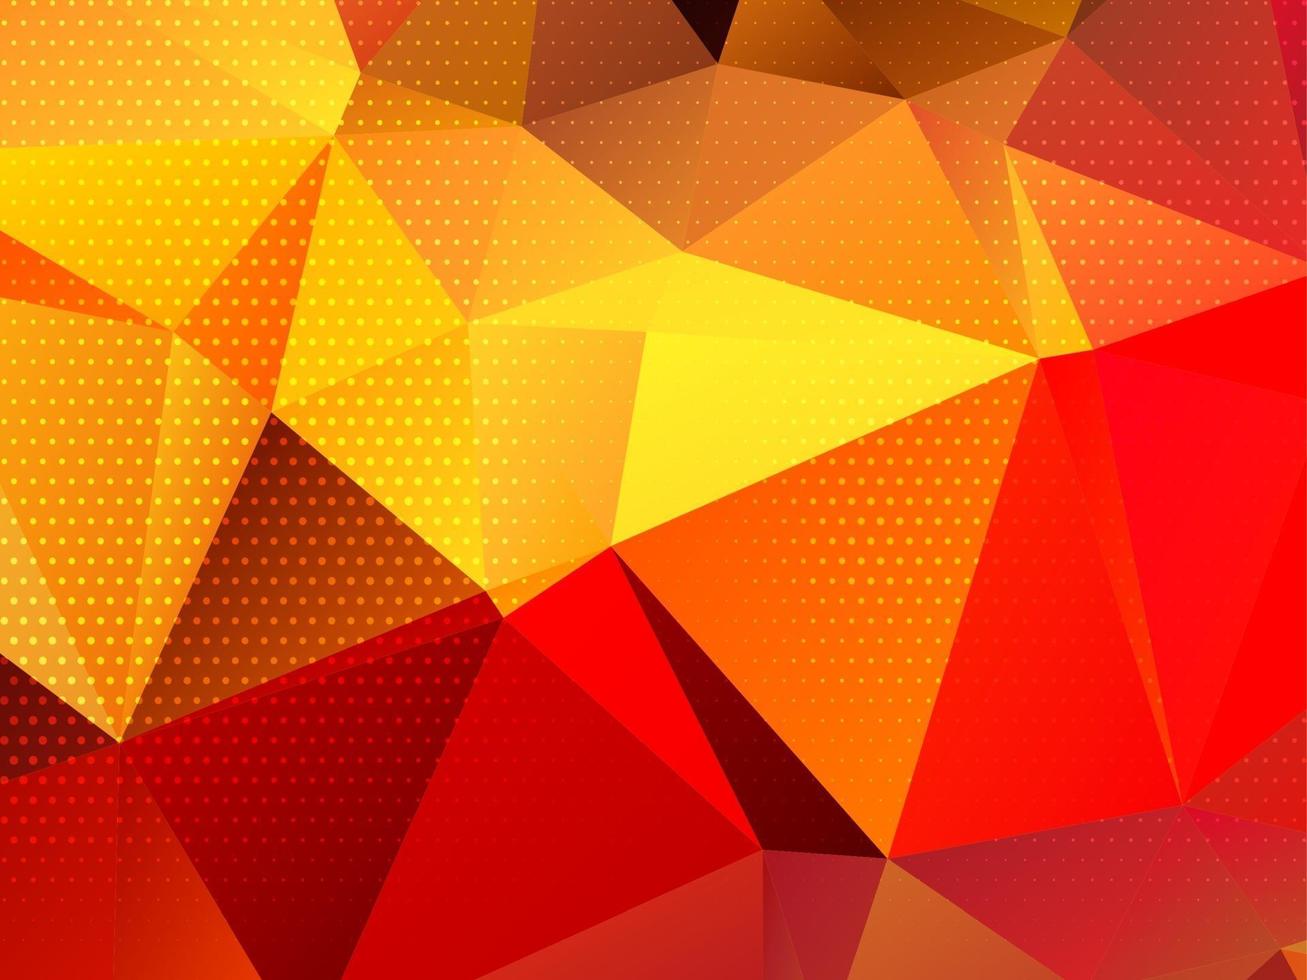 abstrakt färgrik triangulär geometrisk kristallbakgrund vektor